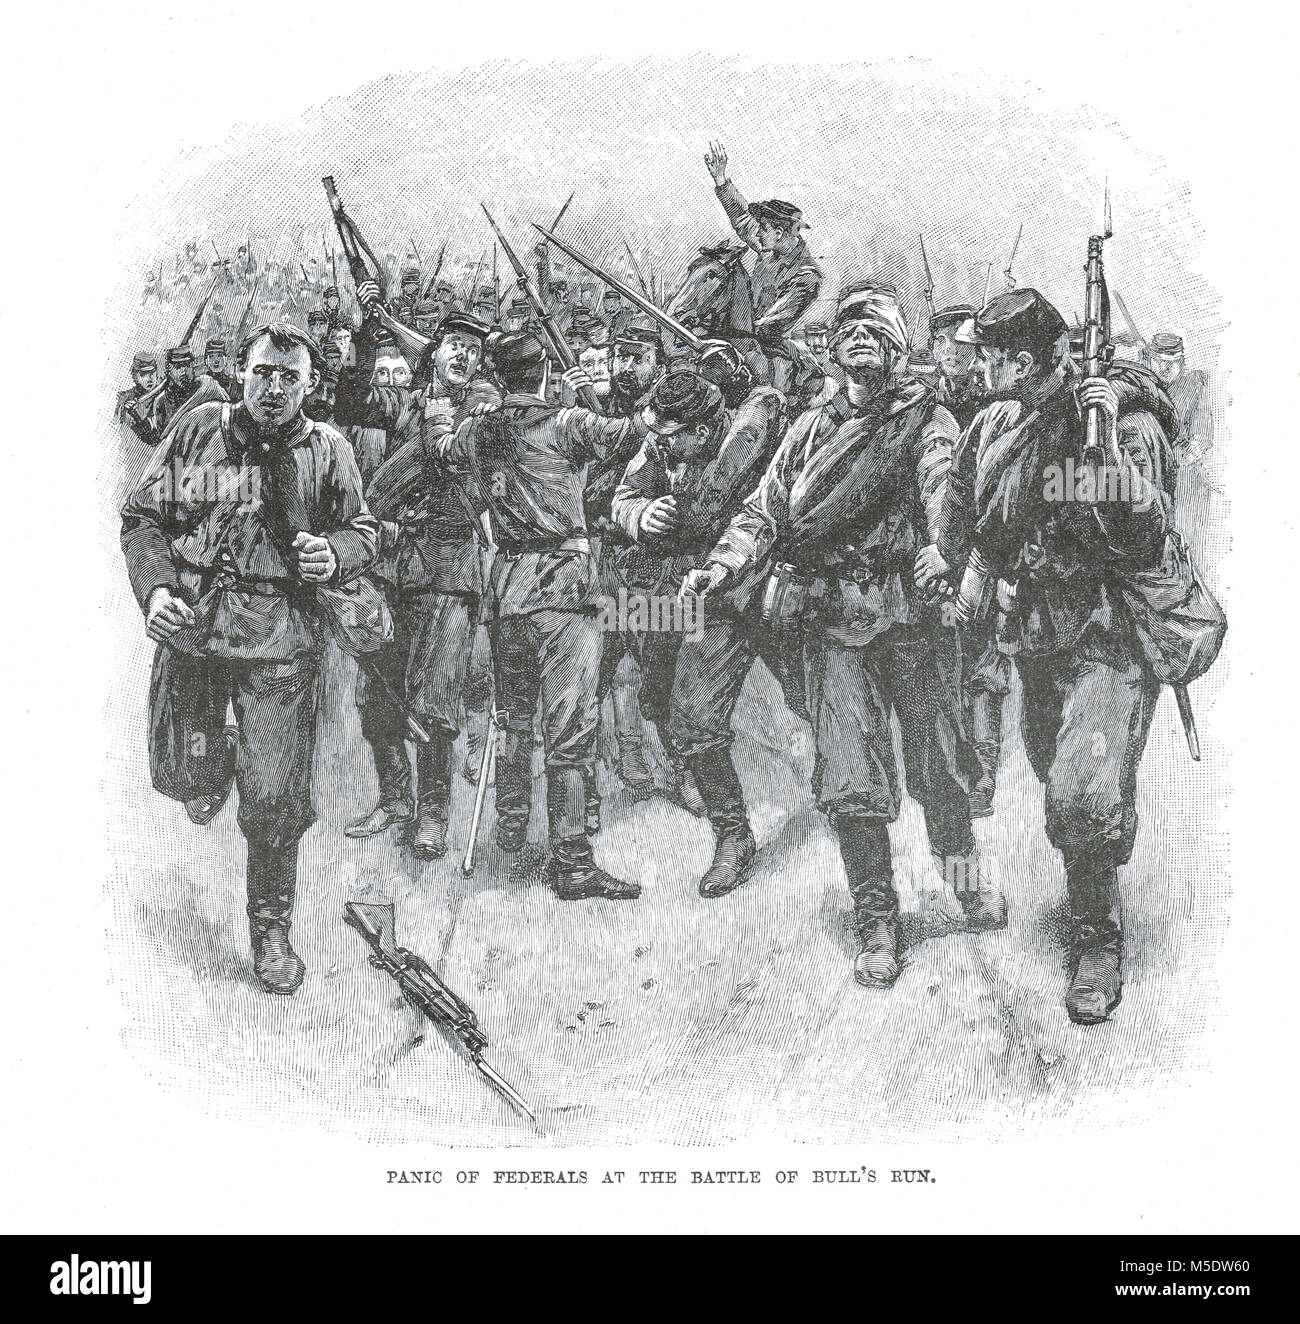 Panico dell esercito federale truppe, prima battaglia di Bull Run, 21 luglio 1861, la prima grande battaglia della Guerra Civile Americana Foto Stock